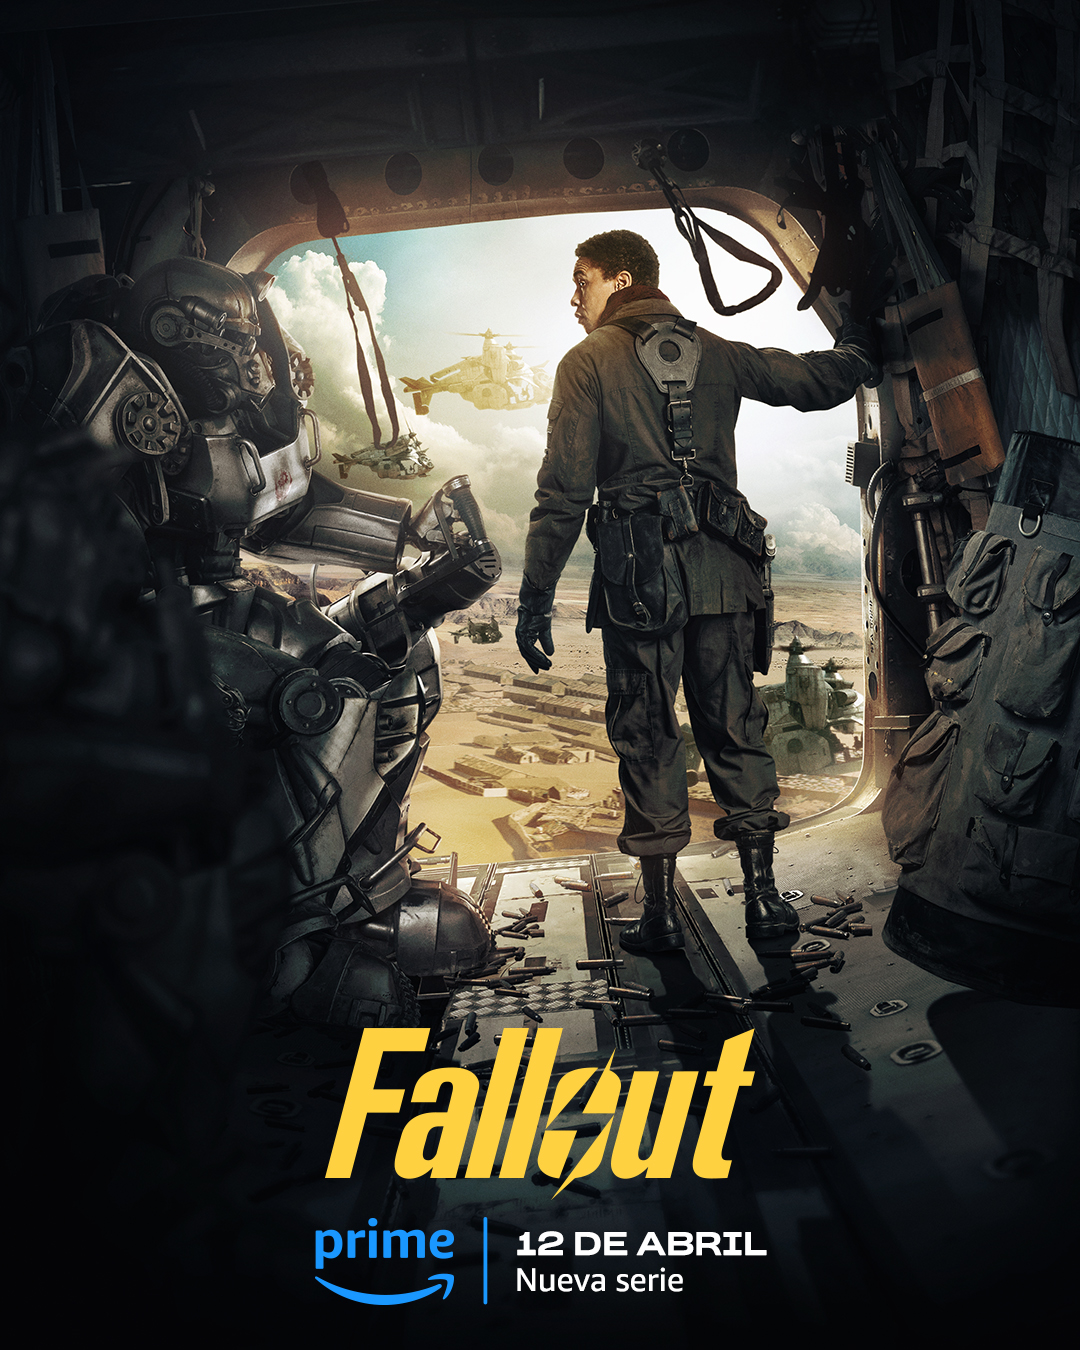 ¡La serie de Fallout lanza su espectacular avance! 12